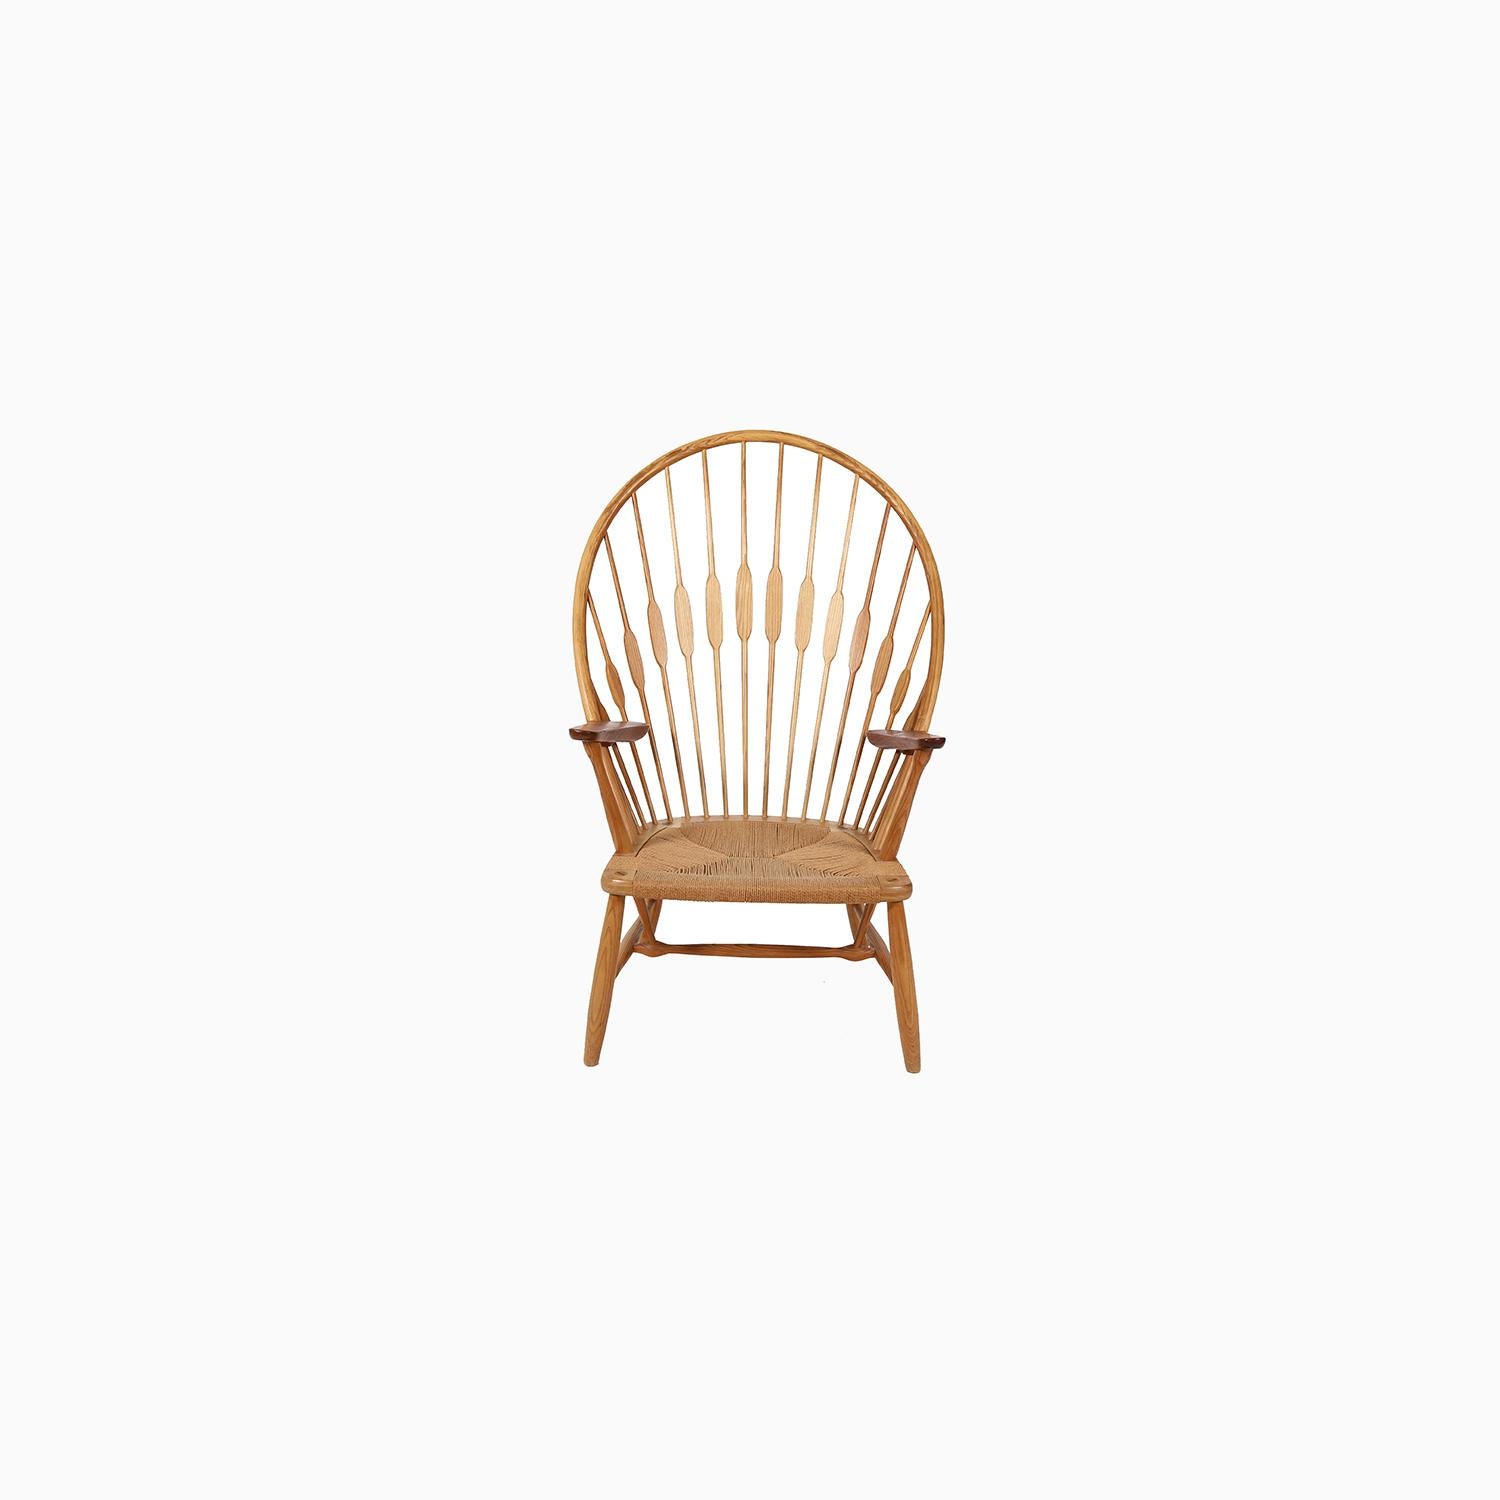 Une chaise longue emblématique conçue par Hans J. Wegner, connue sous le nom de 